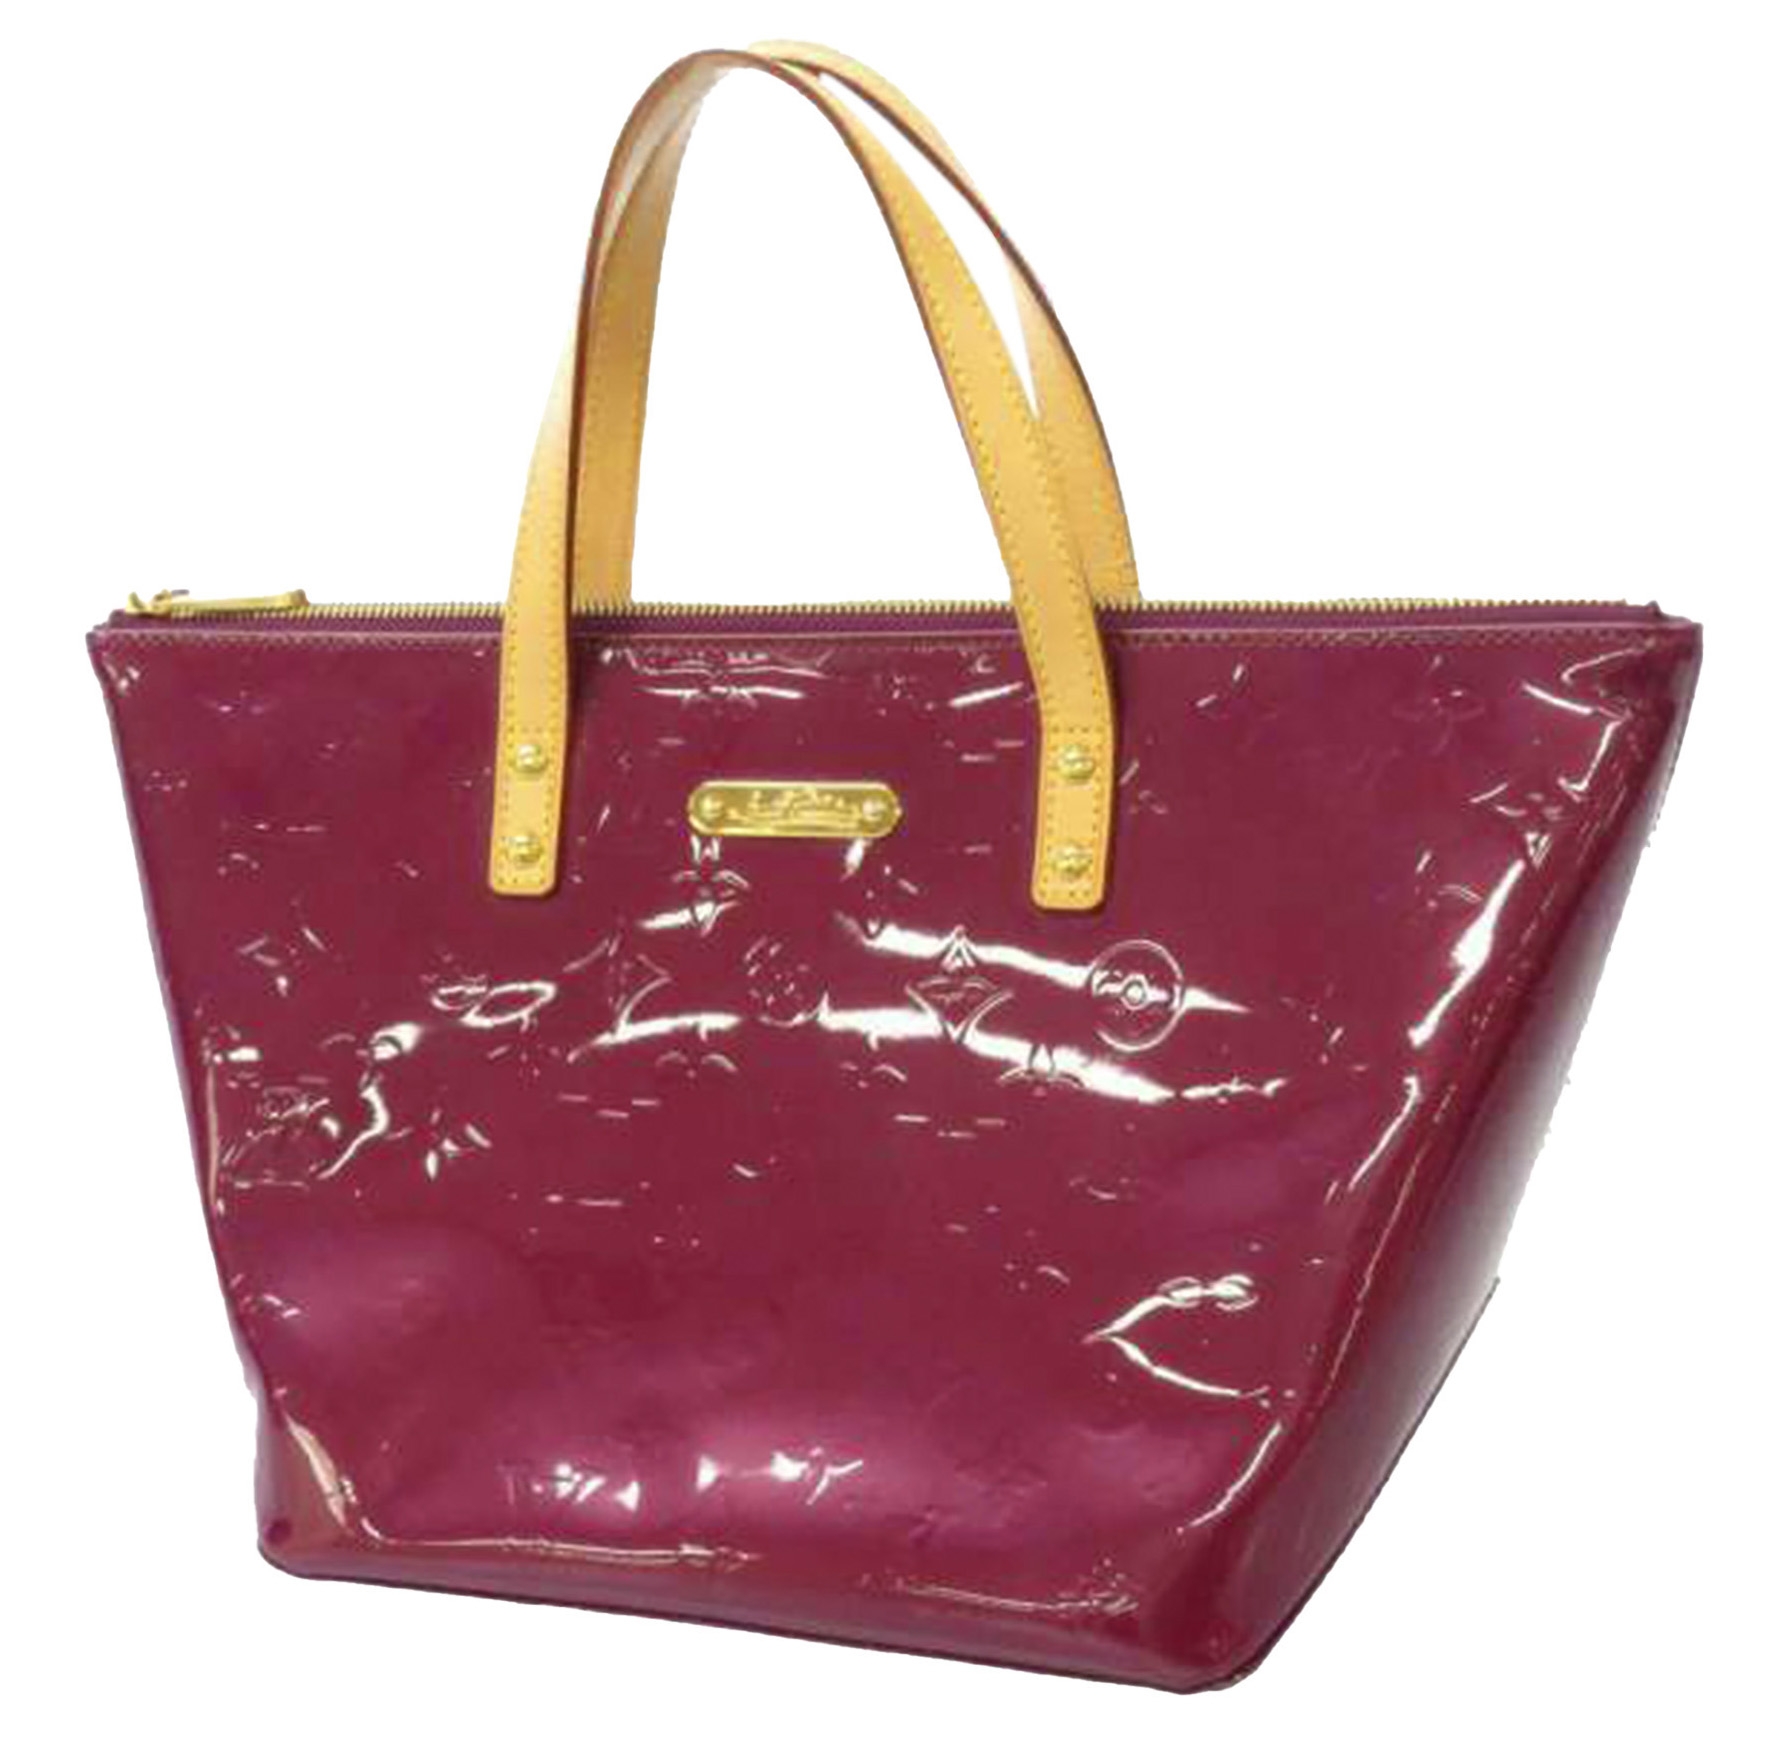 Louis Vuitton, Monogram Vernis Tote Bag, shiny patent le…